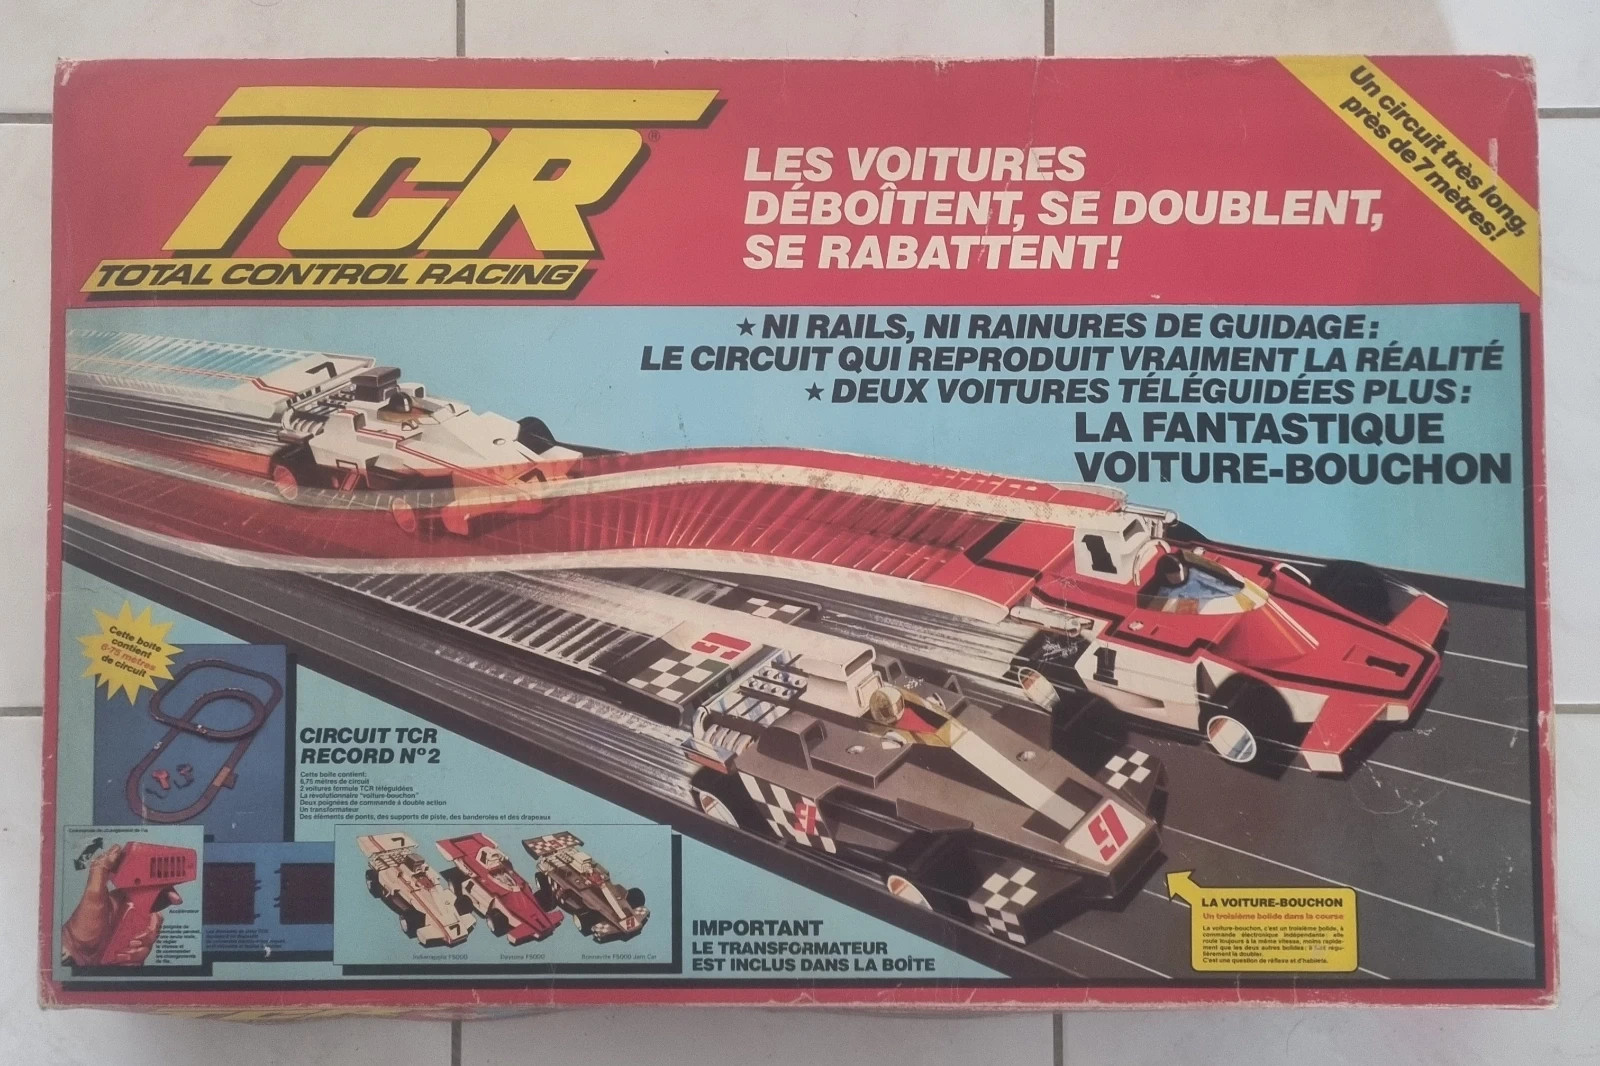 Circuit TCR 1978 près de 7 mètres de long